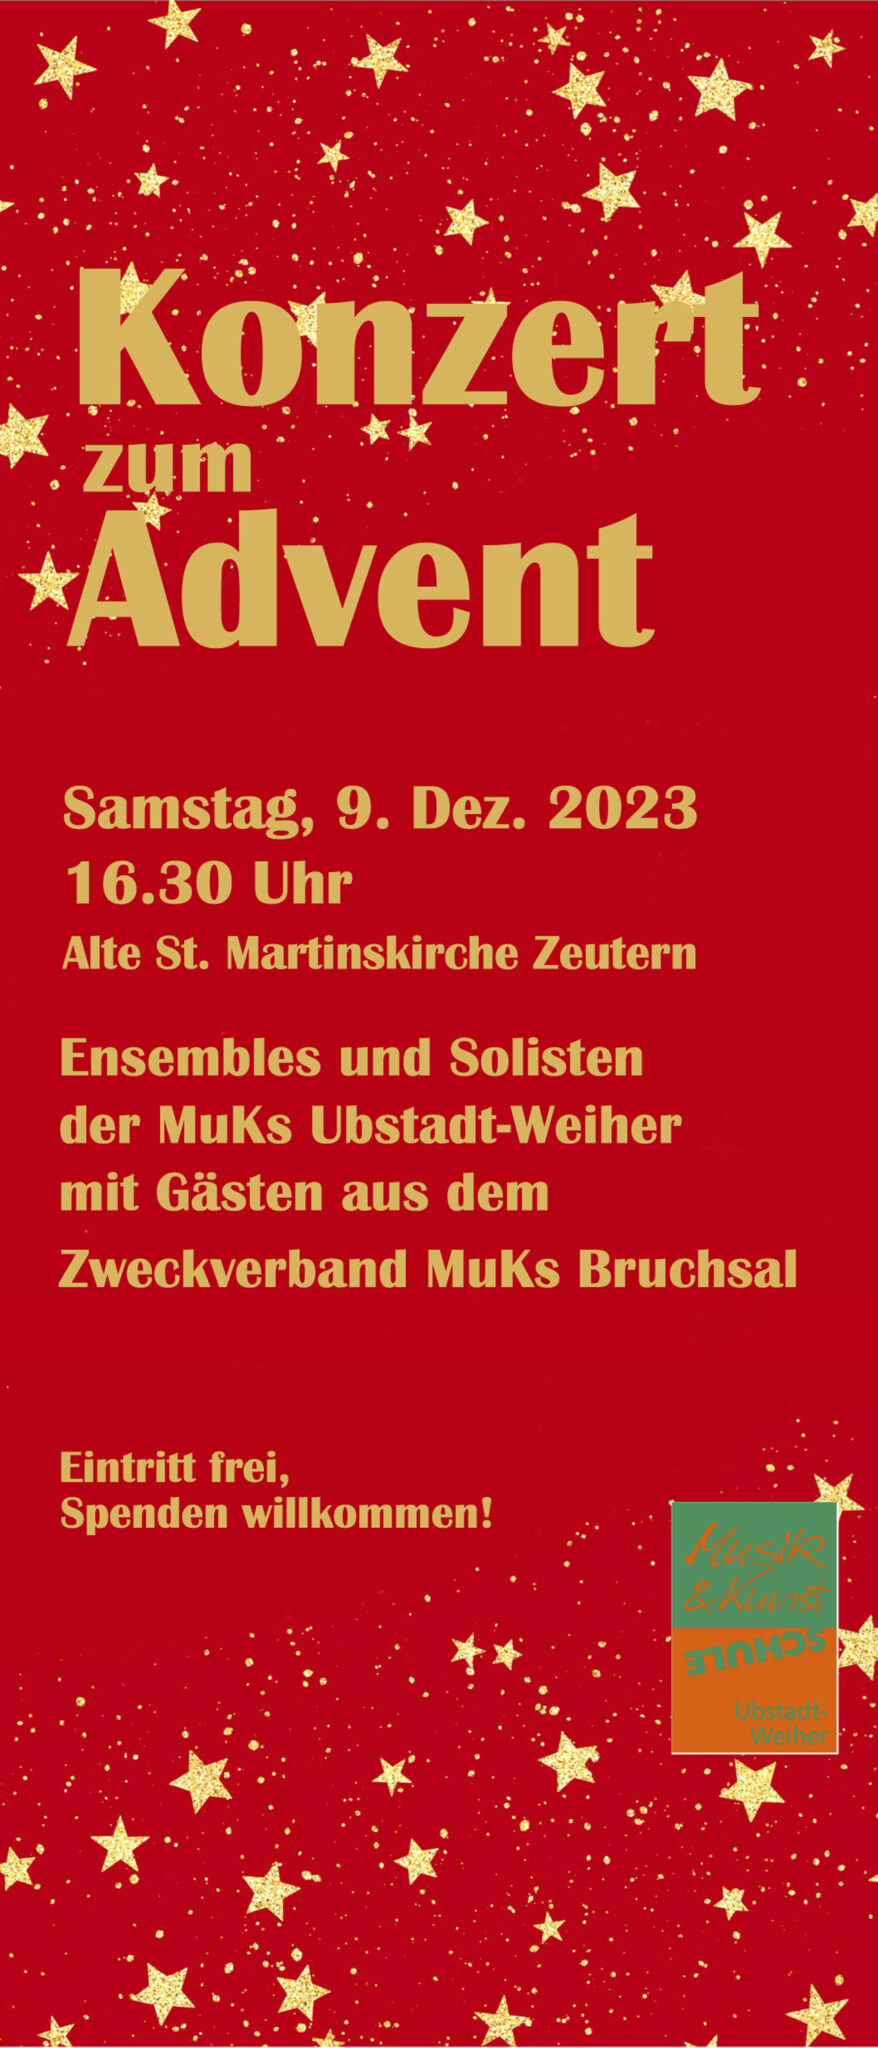 Konzert zum Advent am Samstag, 09. Dezember 2023 um 16.30 Uhr in der Alten St. Martinskirche Zeutern